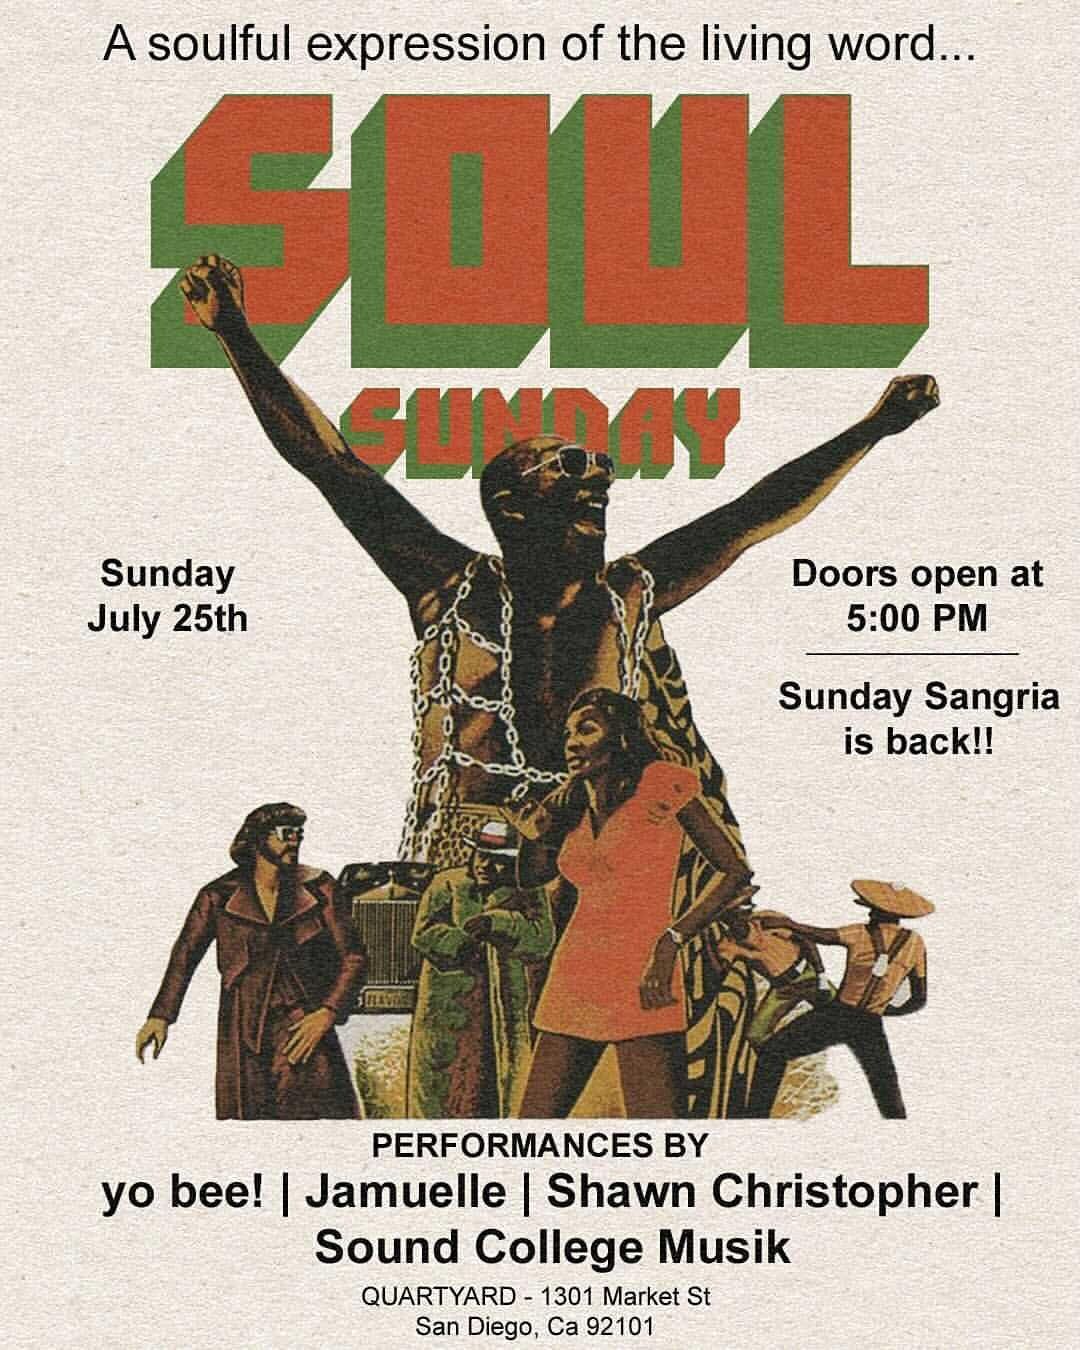 Soul Sunday